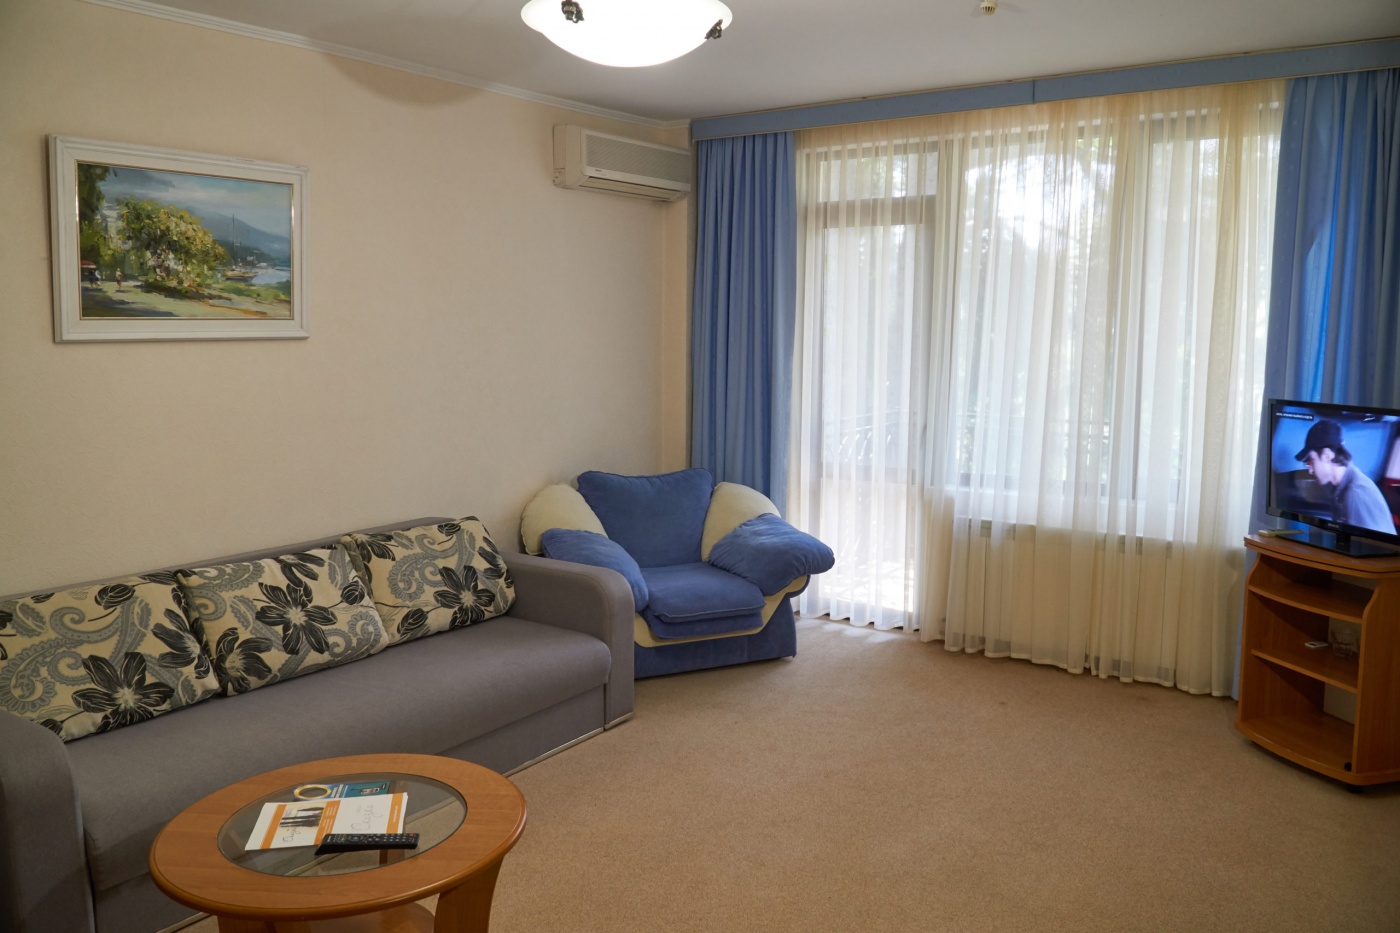  Отель «Сказка» Республика Крым Апартаменты класса Люкс 2-комнатный, фото 7